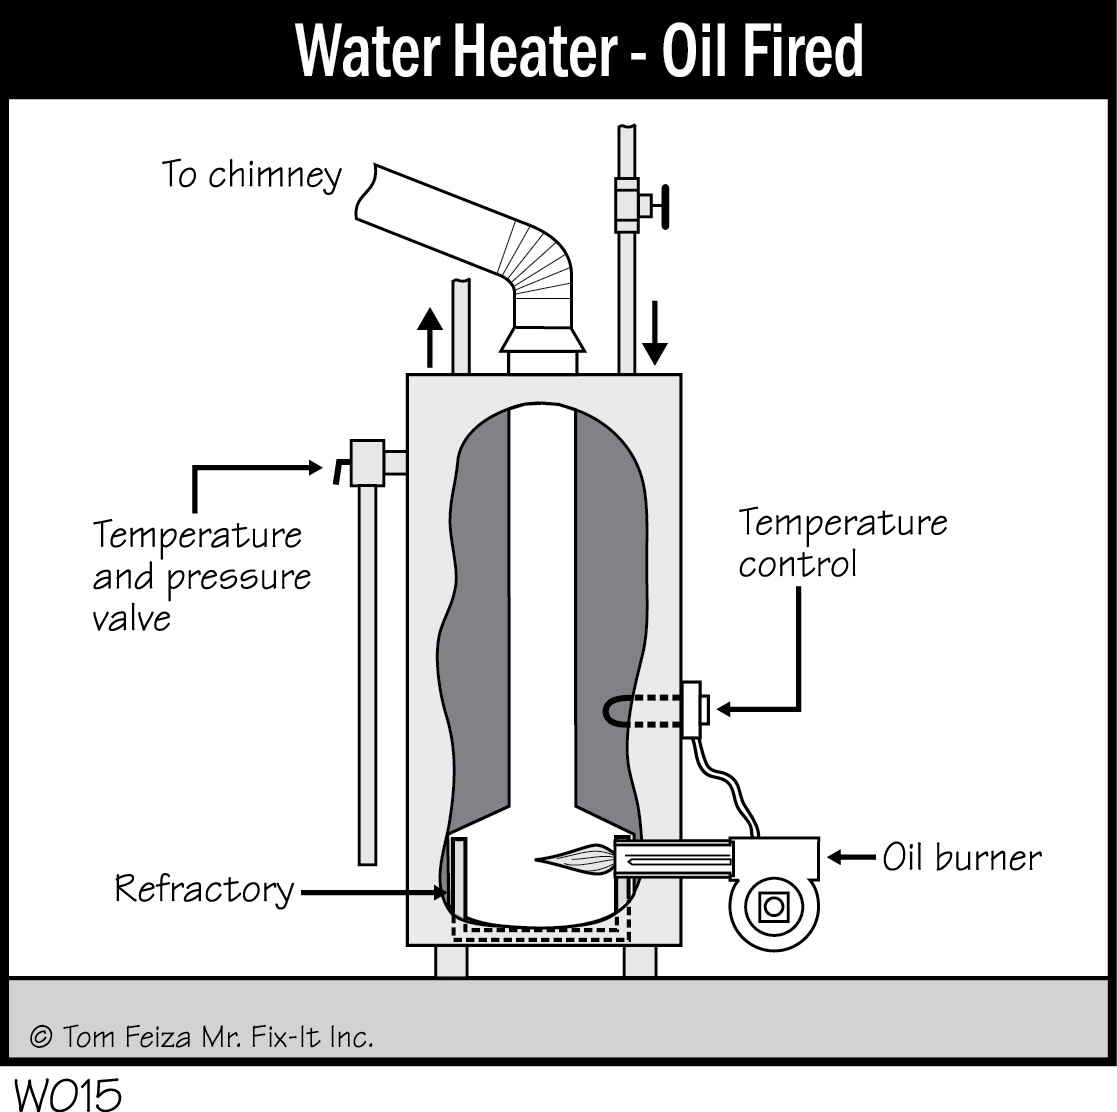 W015 - Water Heater - Oil-Fired